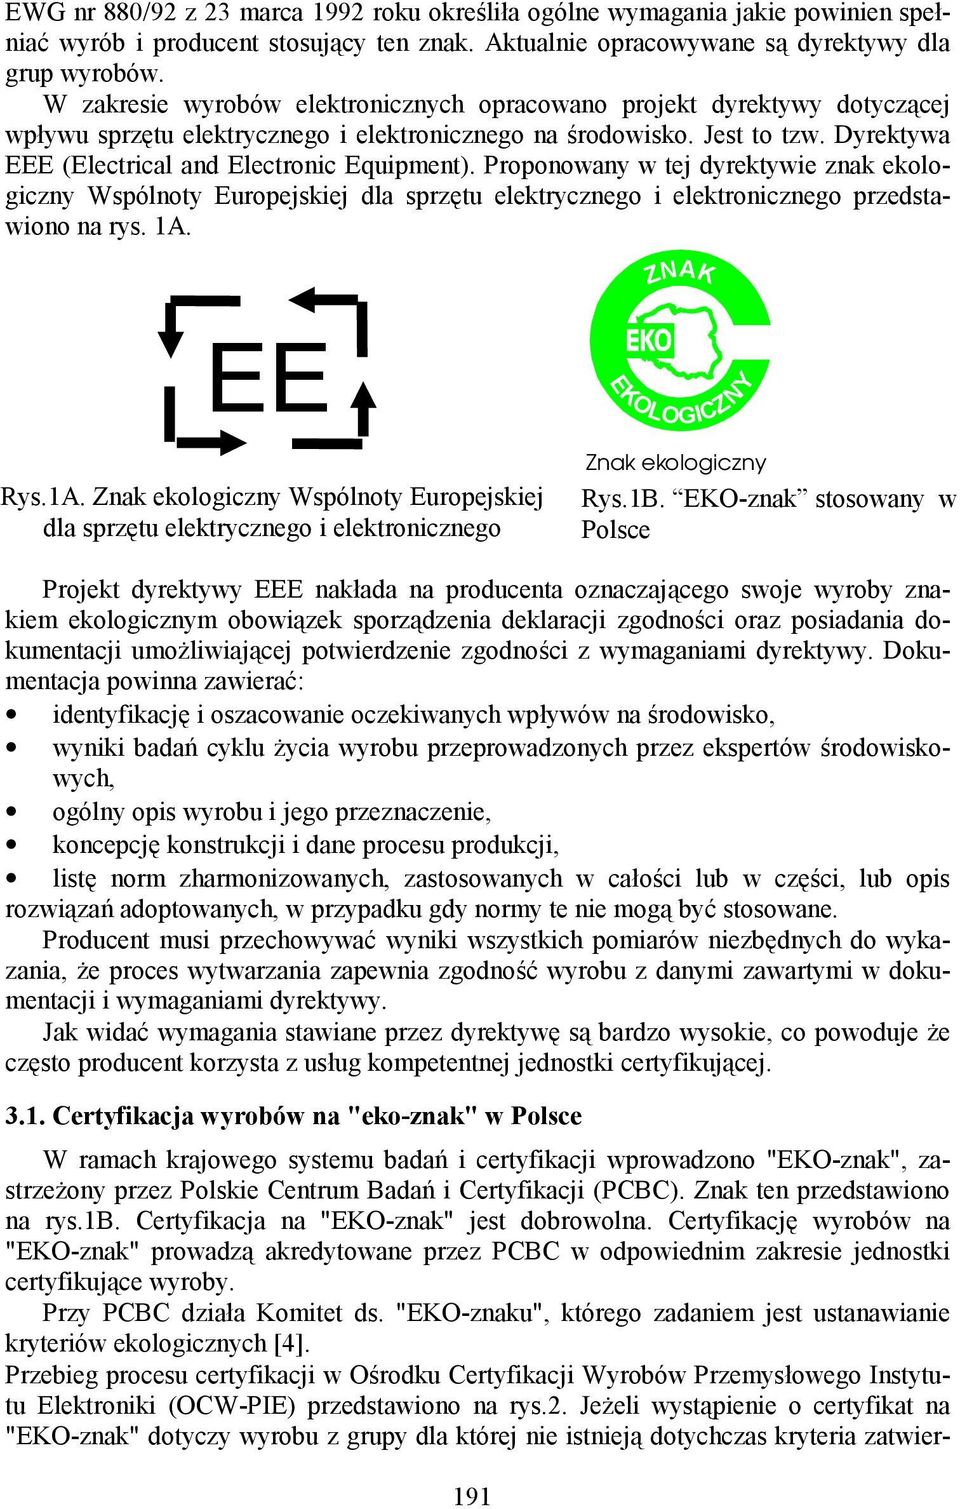 Dyrektywa EEE (Electrical and Electronic Equipment). Proponowany w tej dyrektywie znak ekologiczny Wspólnoty Europejskiej dla sprzętu elektrycznego i elektronicznego przedstawiono na rys. 1A.